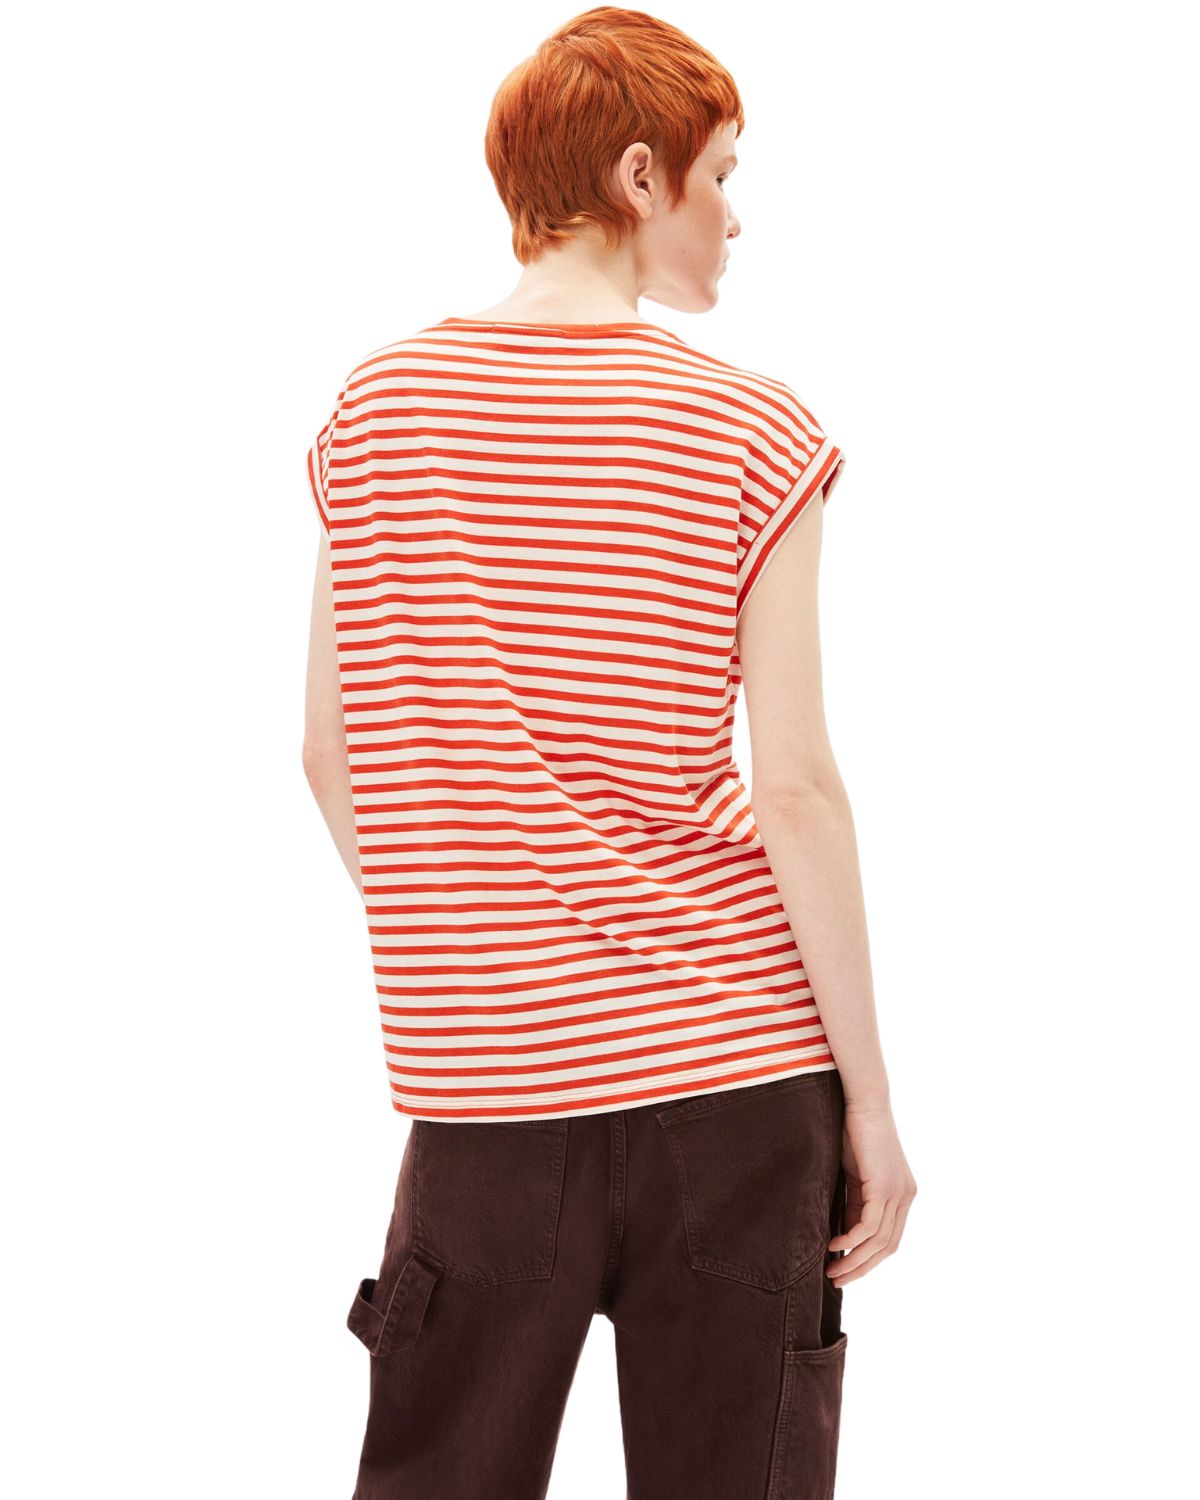 Jilaana Stripes emergency red-Oatmilk - T-Shirt Damen